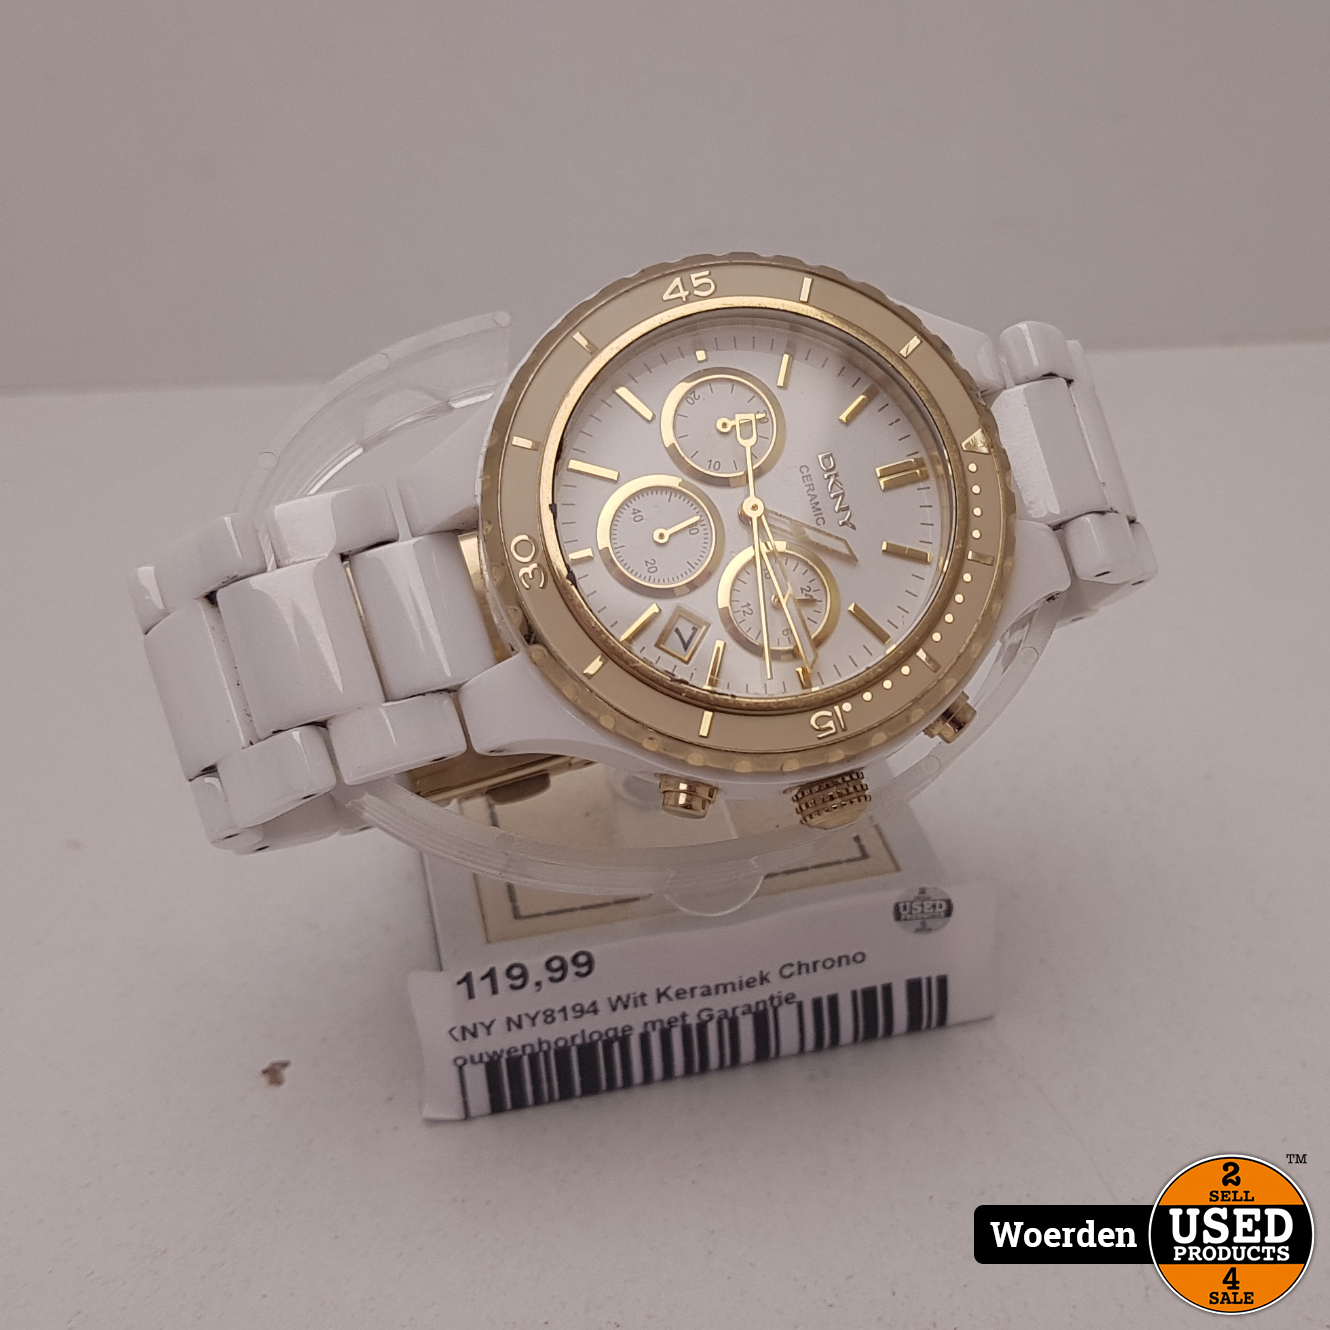 NY8194 Wit Keramiek Chrono horloge met Garantie - Used Products Woerden